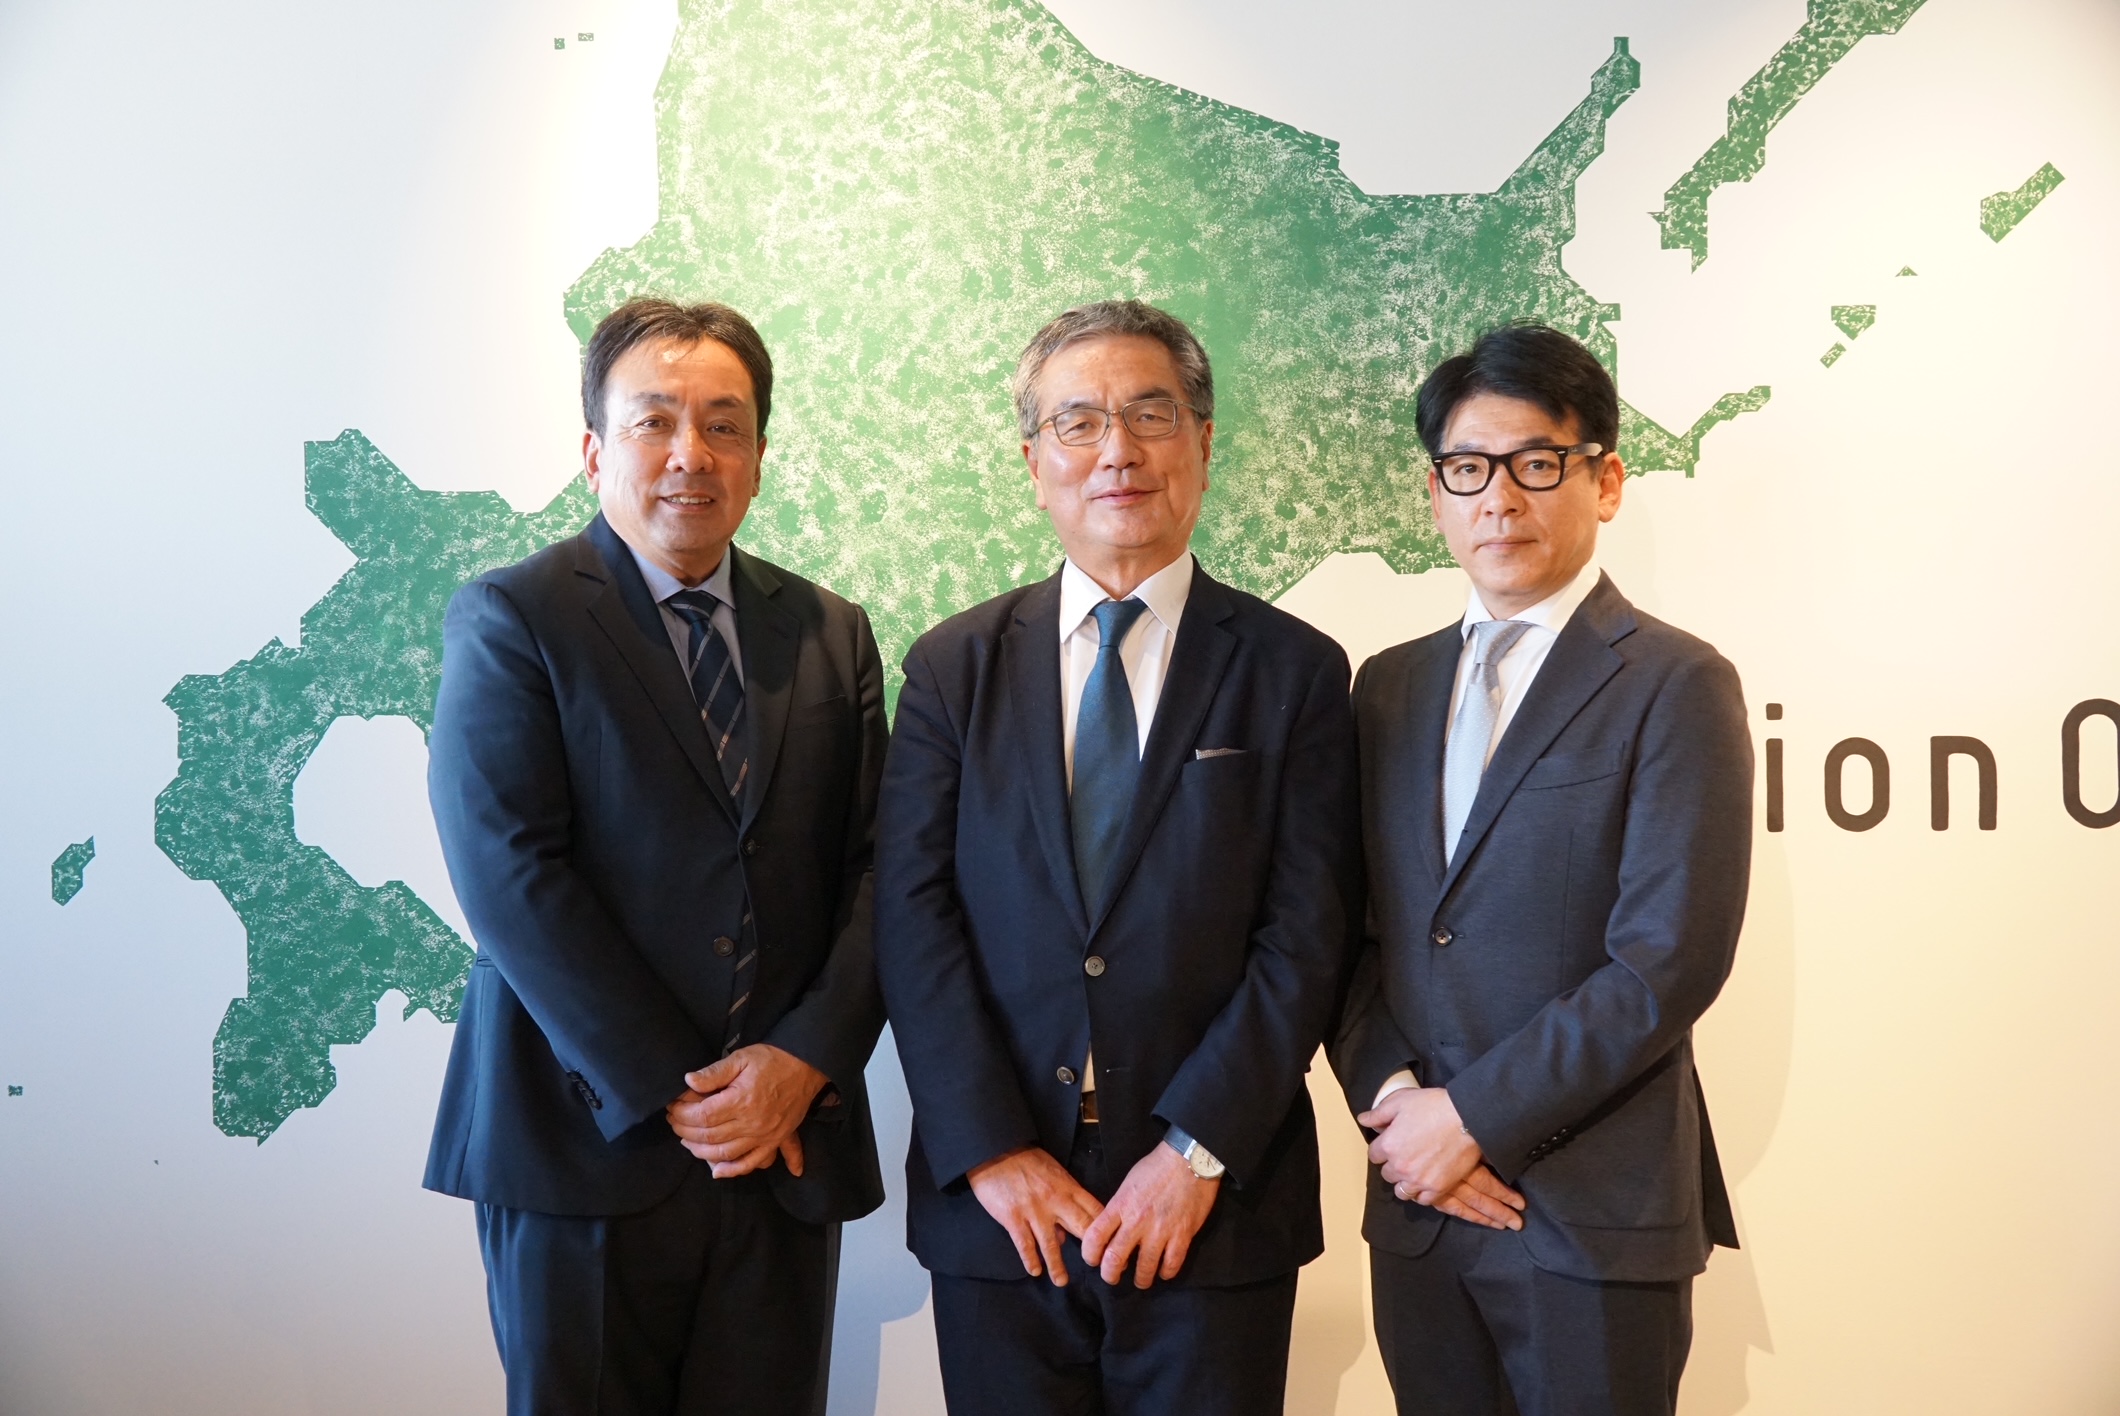 自然電力、北海道での事業を推進する新会社「北海道自然電力株式会社」を設立